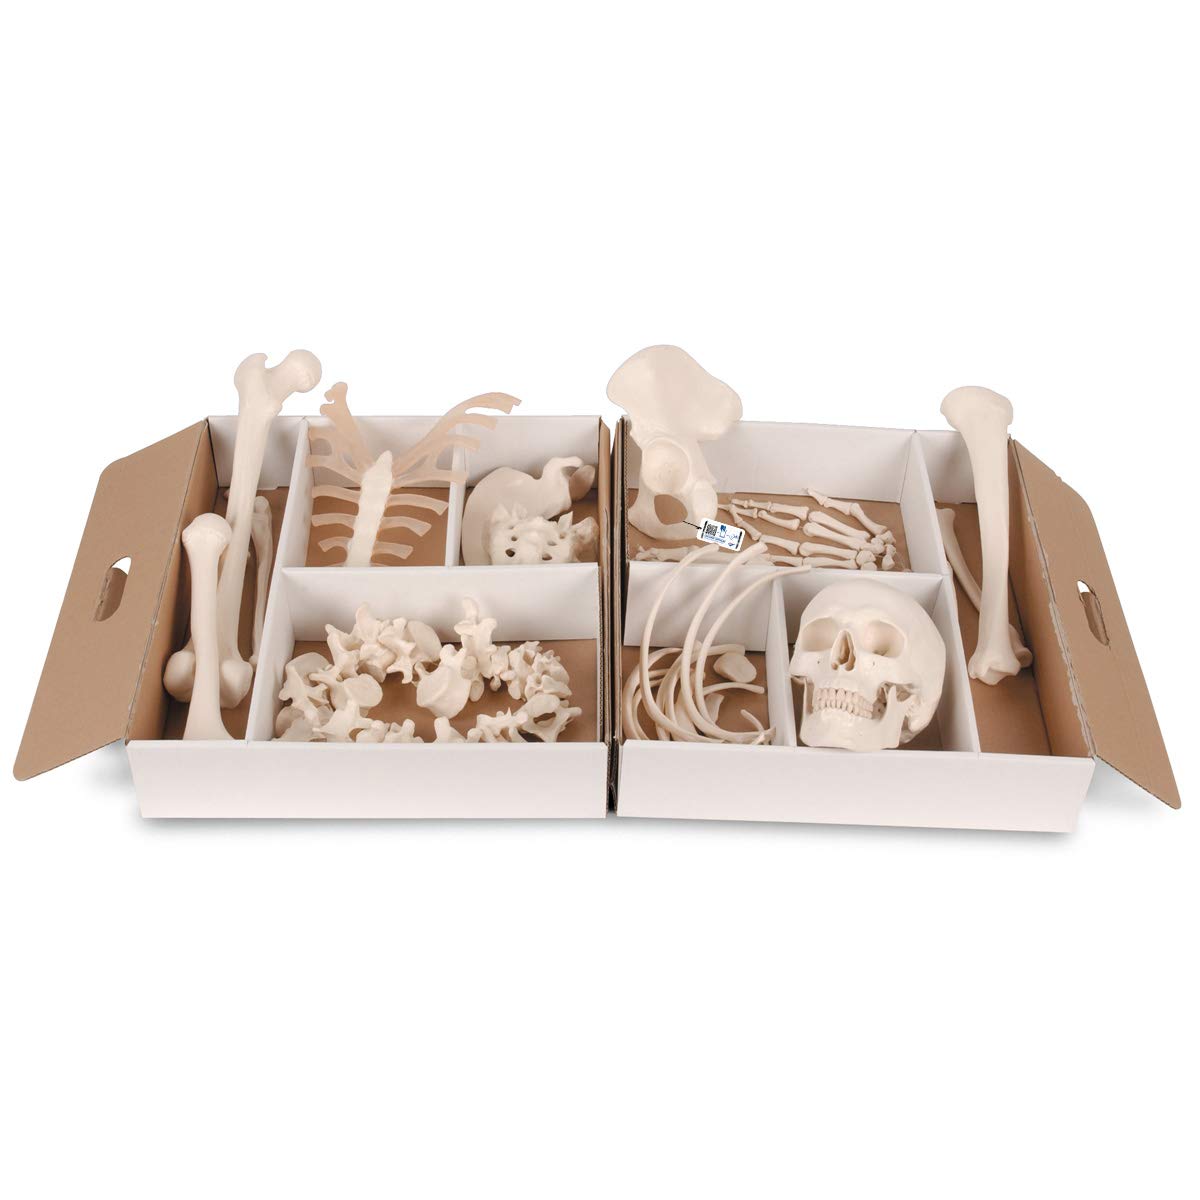 3B Scientific Menschliche Anatomie - Halbes Skelett, unmontiert, Hand/Fuß lose auf Nylon gezogen + kostenlose Anatomie App - 3B Smart Anatomy, A04/1